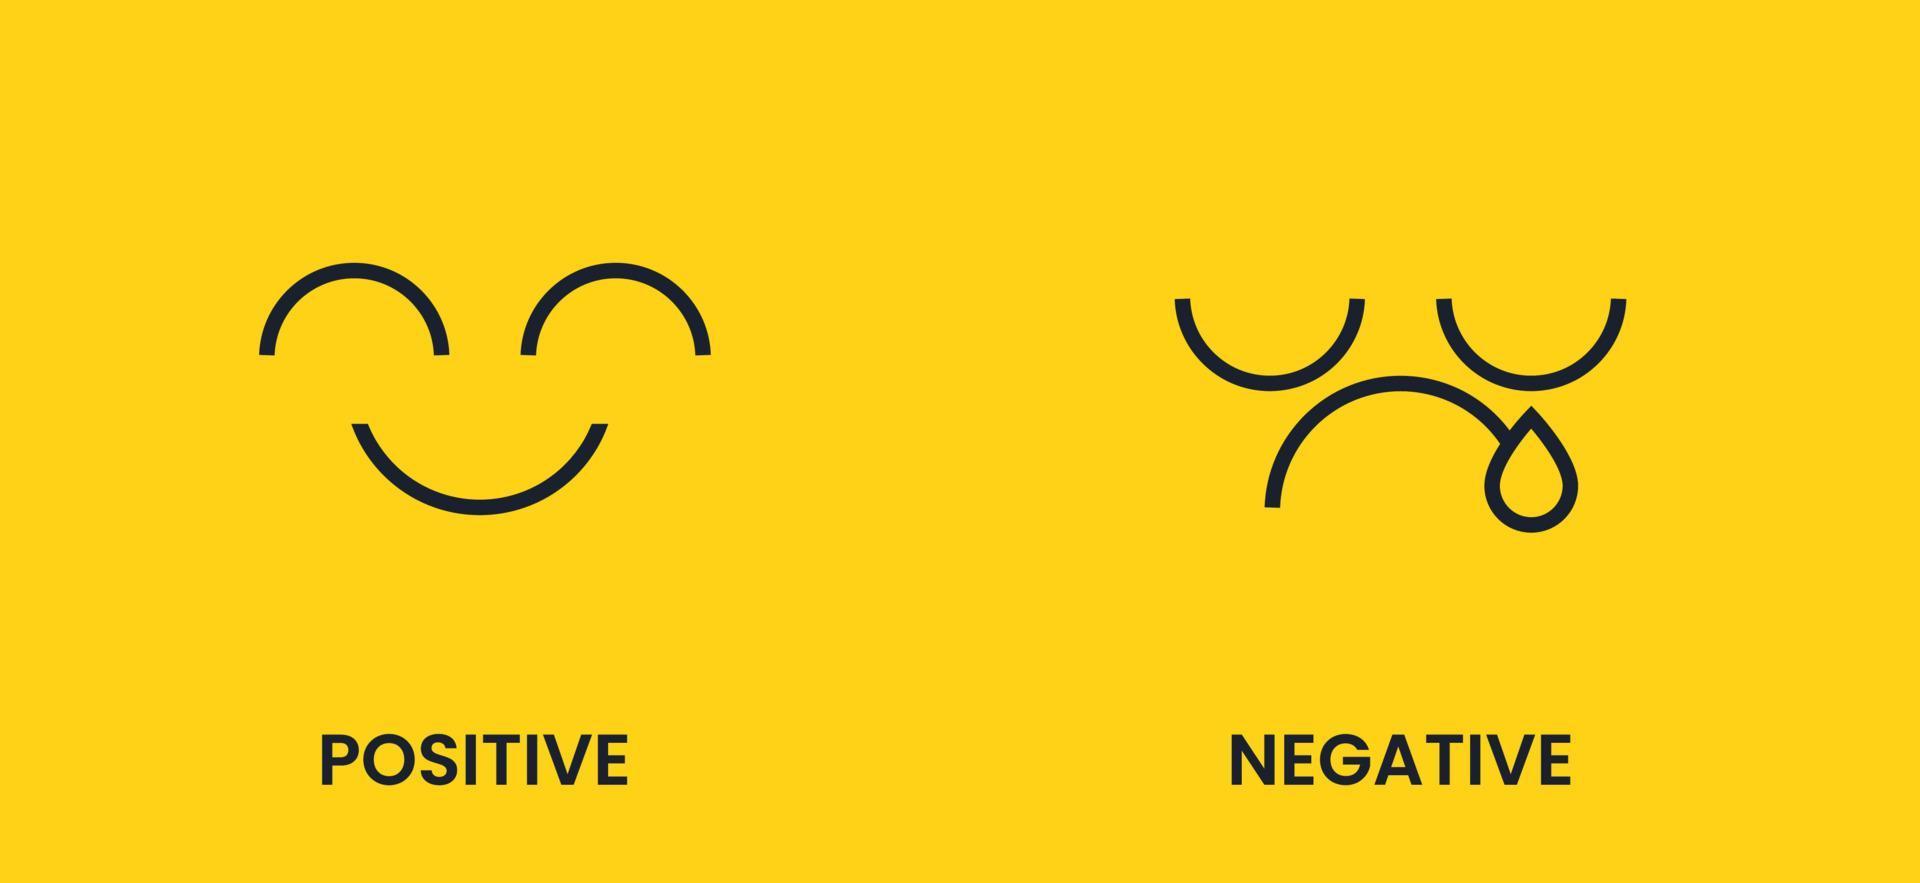 positivo y negativo. Emoticon triste y alegre con una sonrisa negra sobre un fondo amarillo. banner de vector de antónimos.